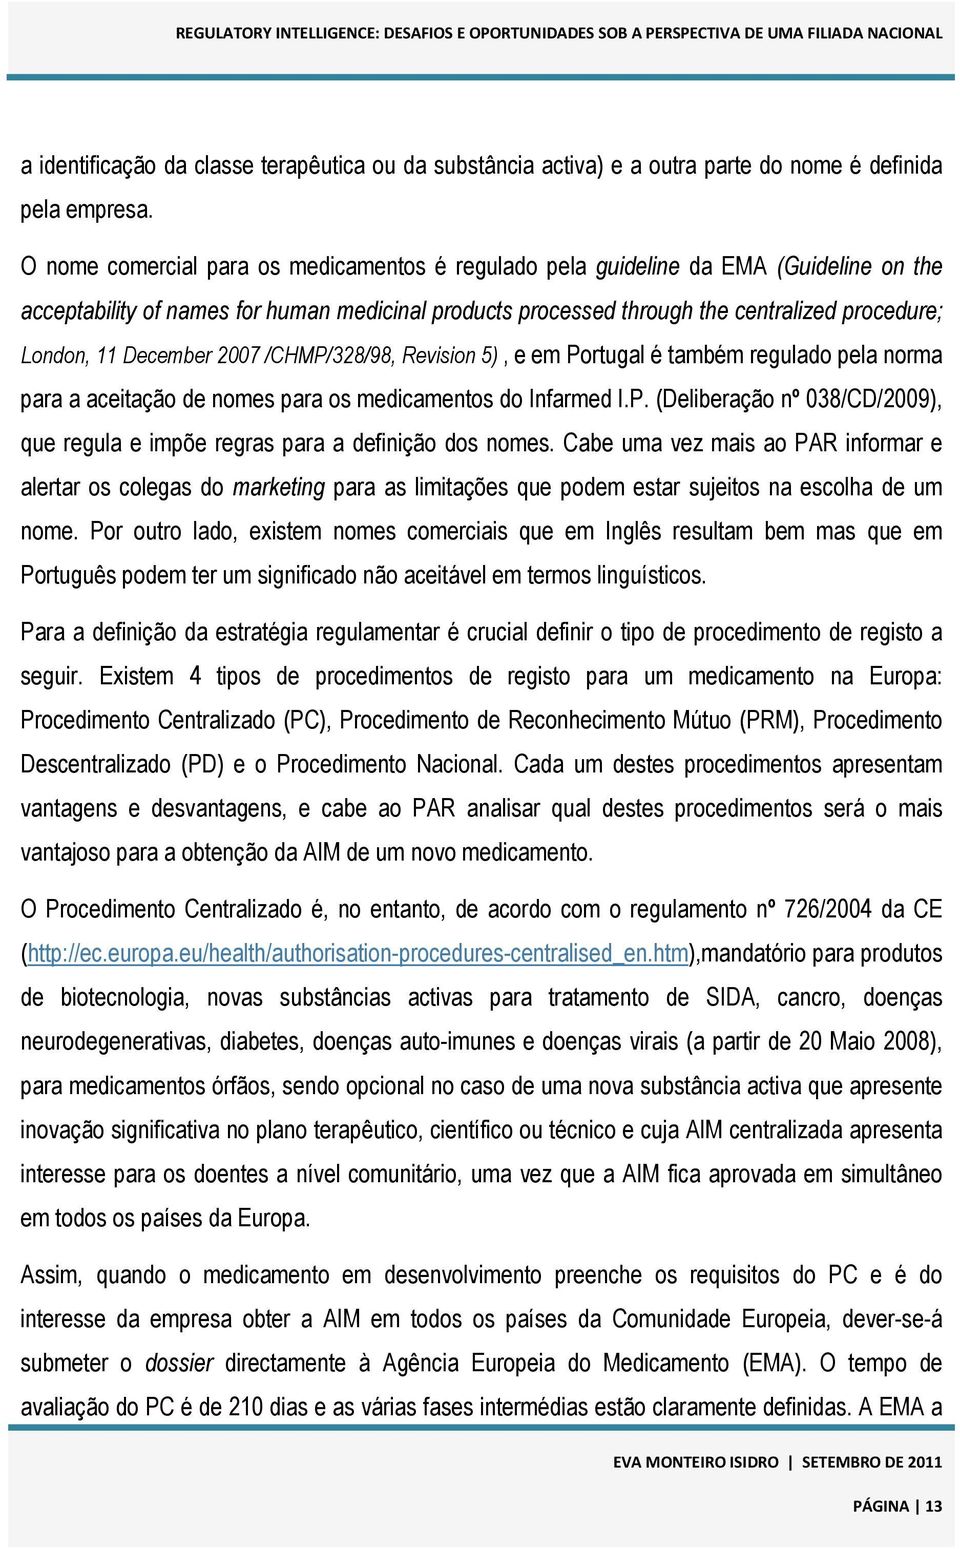 December 2007 /CHMP/328/98, Revision 5), e em Portugal é também regulado pela norma para a aceitação de nomes para os medicamentos do Infarmed I.P. (Deliberação nº 038/CD/2009), que regula e impõe regras para a definição dos nomes.